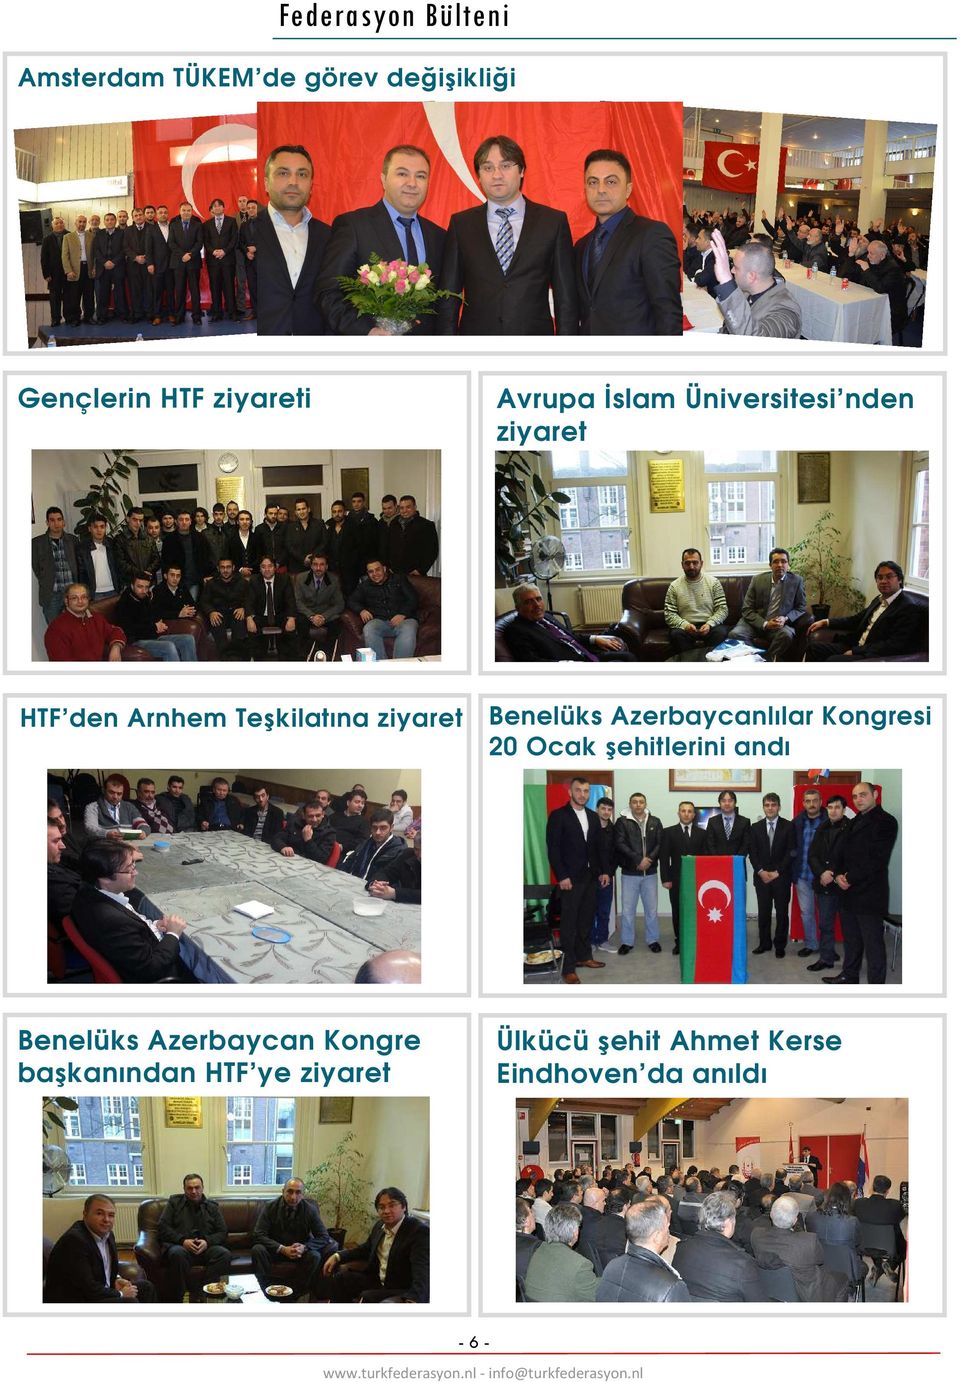 Azerbaycanlılar Kongresi 20 Ocak şehitlerini andı Benelüks Azerbaycan